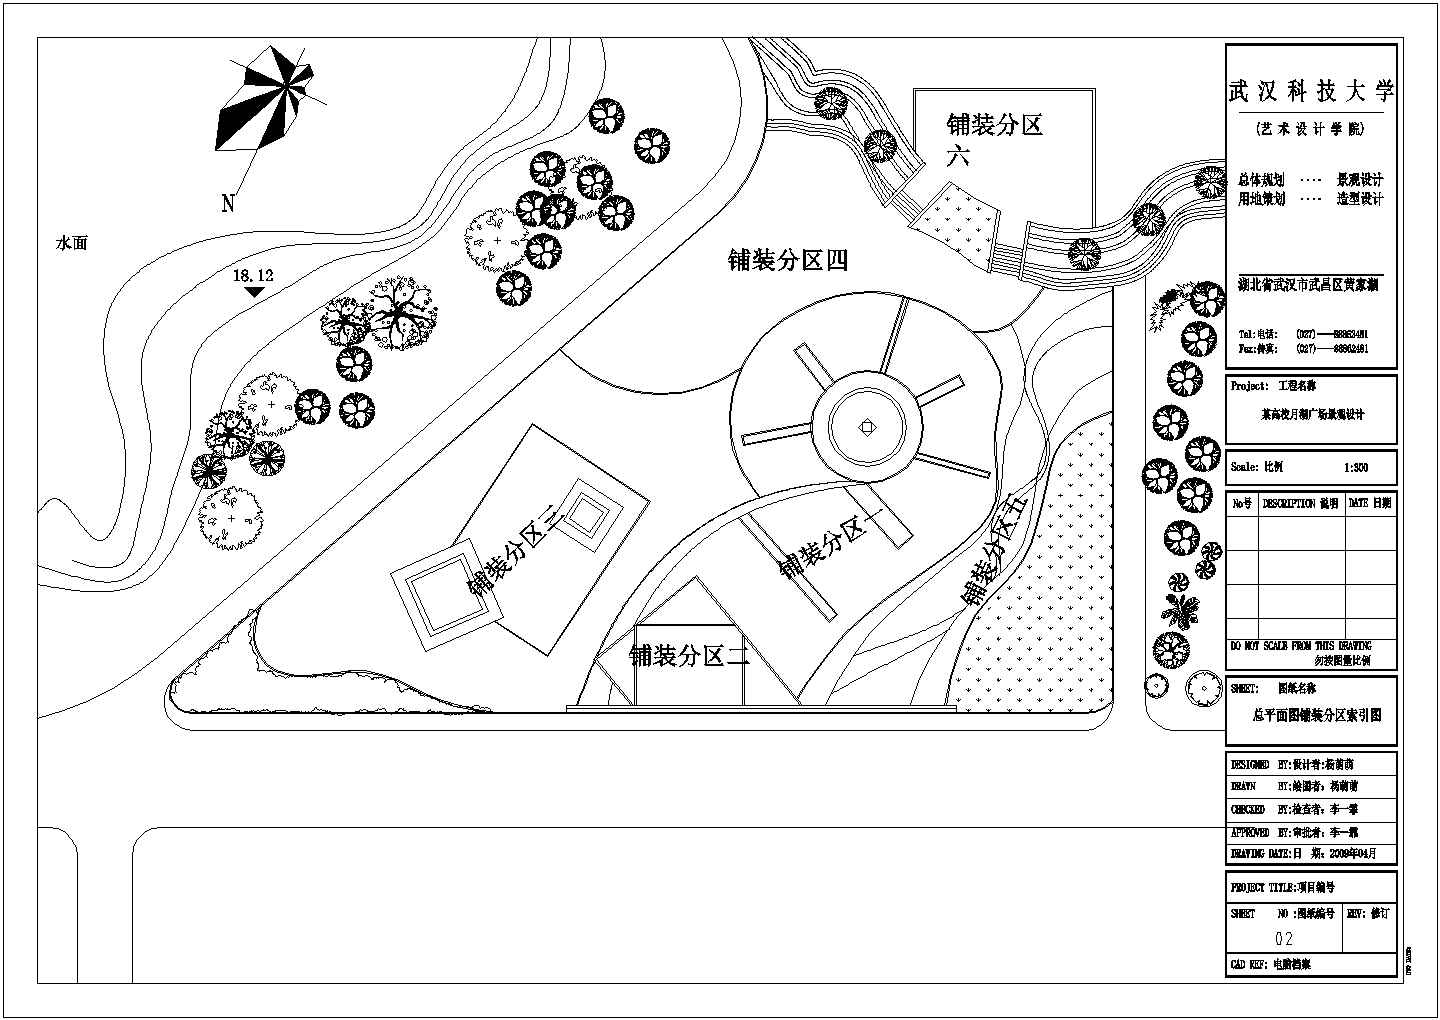 武汉科技大学月湖广场绿化工程施工设计图